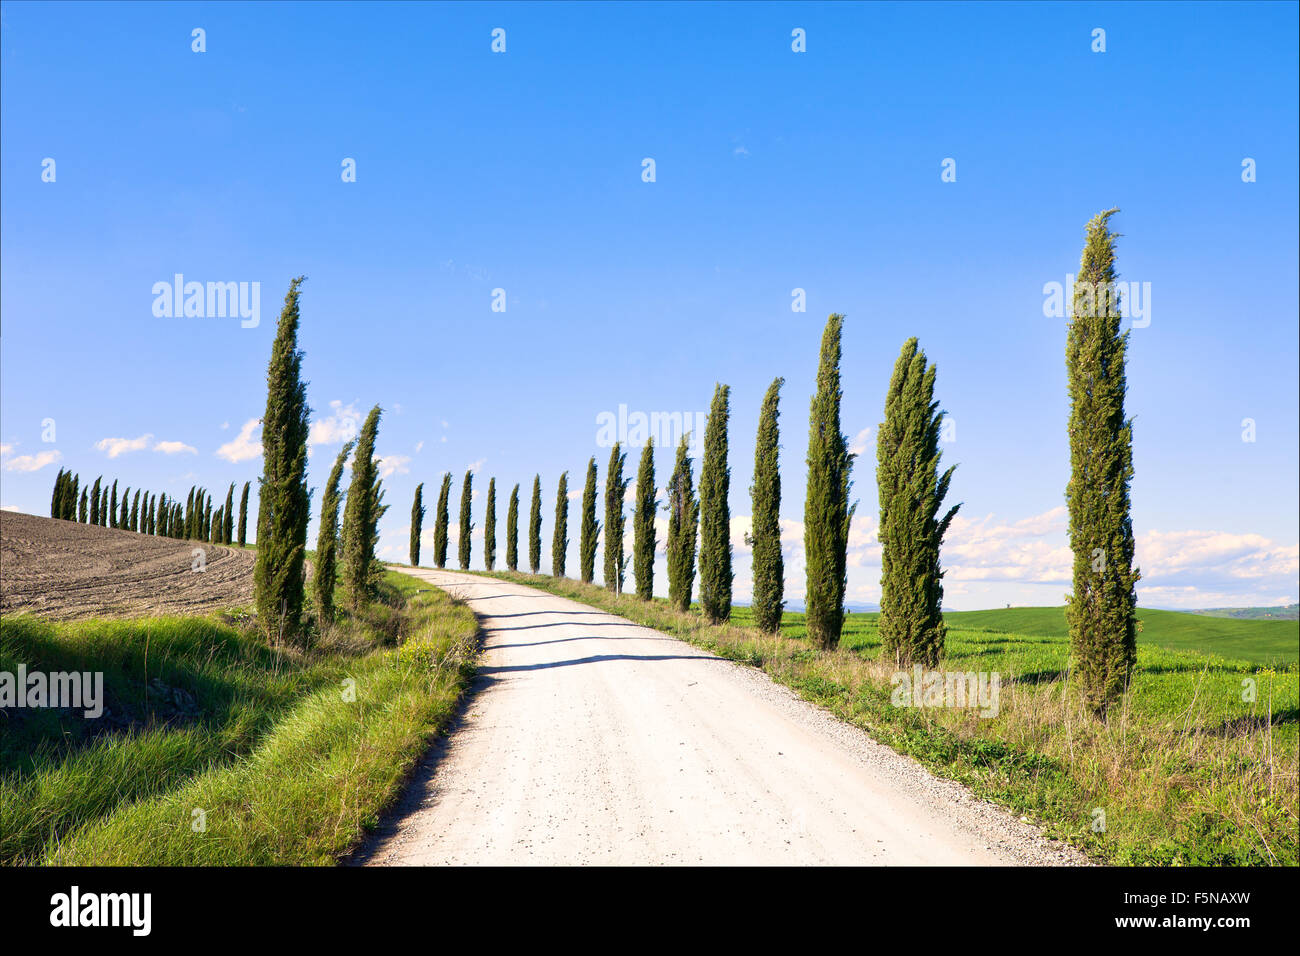 Zypressen-Zeilen und eine weiße Straße typische Landschaft in Crete Senesi Land in der Nähe von Siena, Toskana, Italien, Europa. Stockfoto